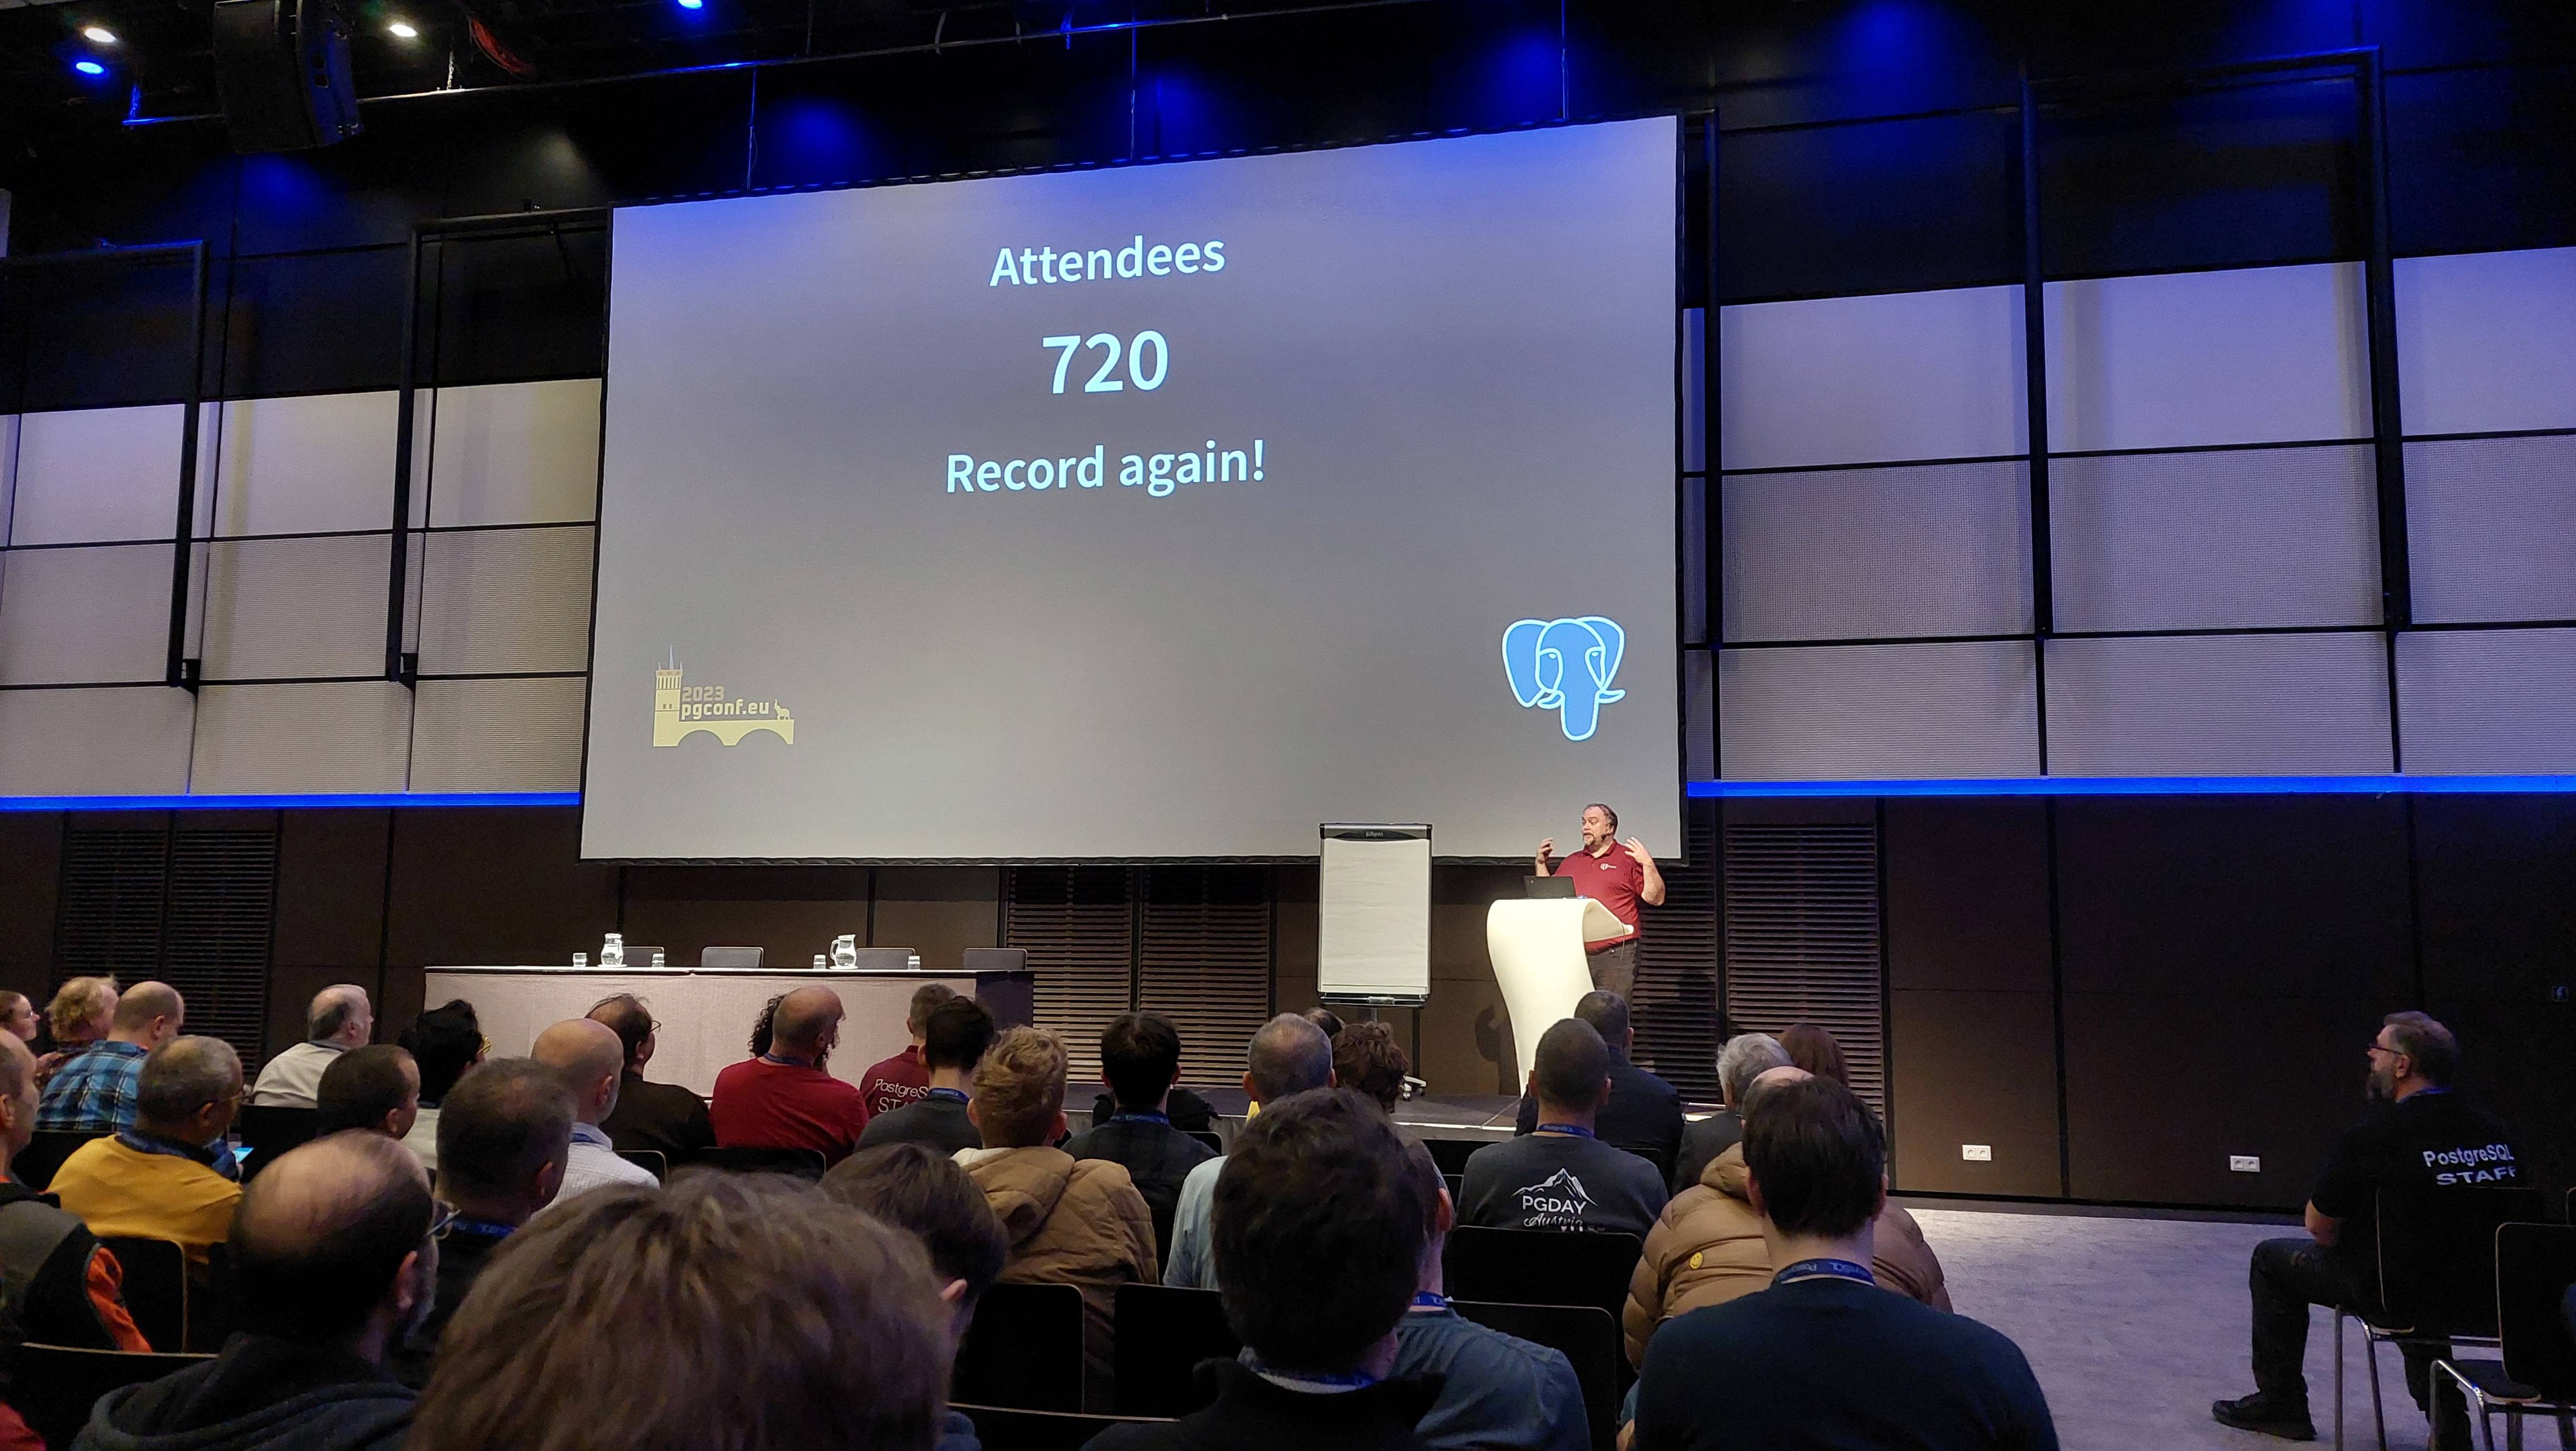 Magnus Hagander presenting a slide that shows 720 registrations